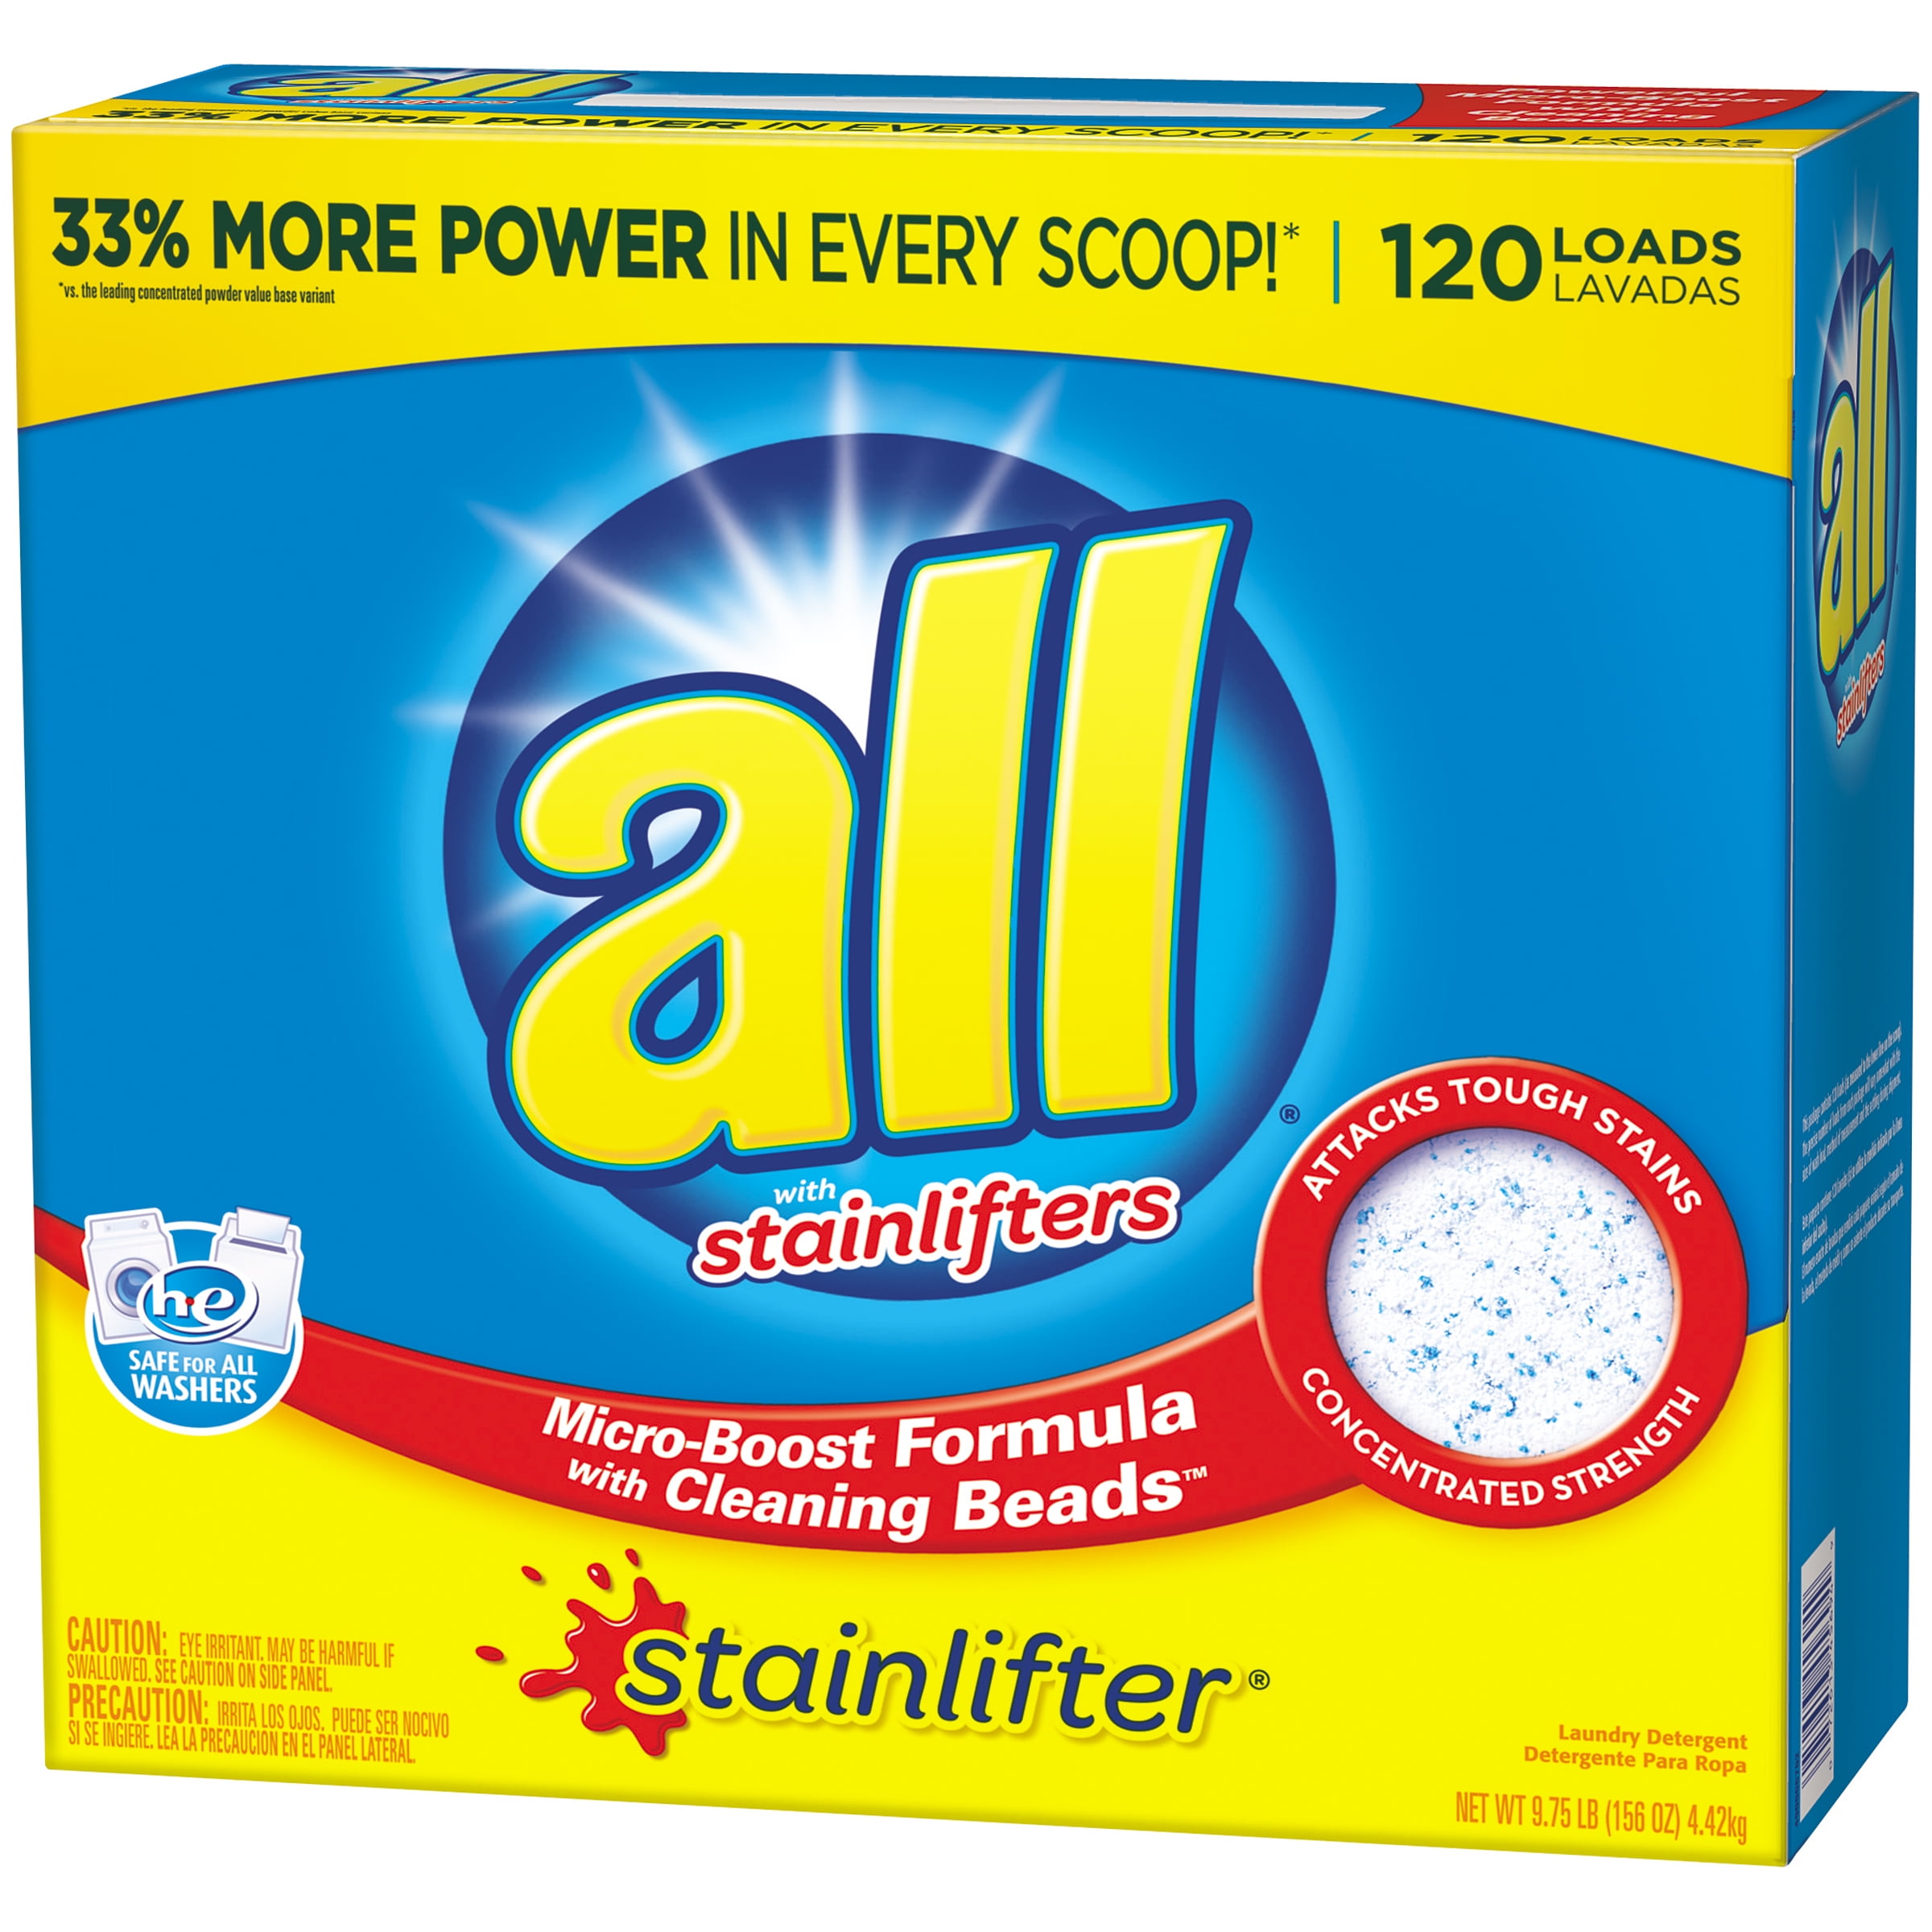 all powder detergent